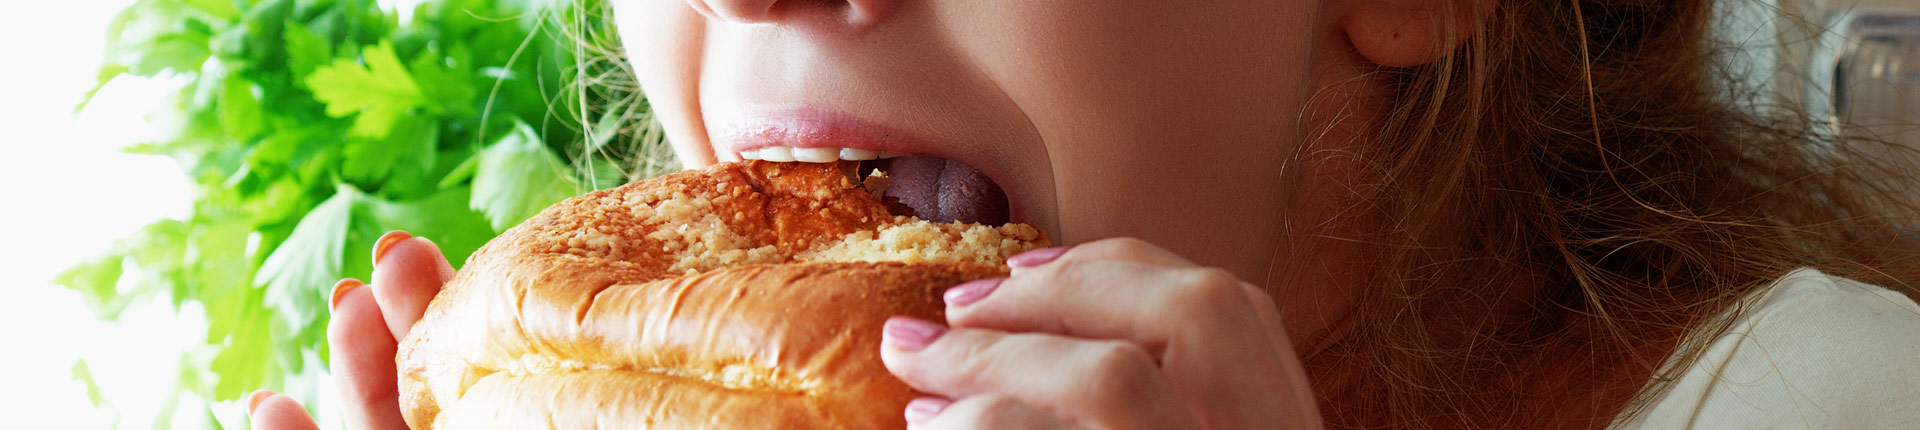 Dwa rodzaje głodu i ich wpływ na otyłość - Głód homeostatyczny i hedonistyczny